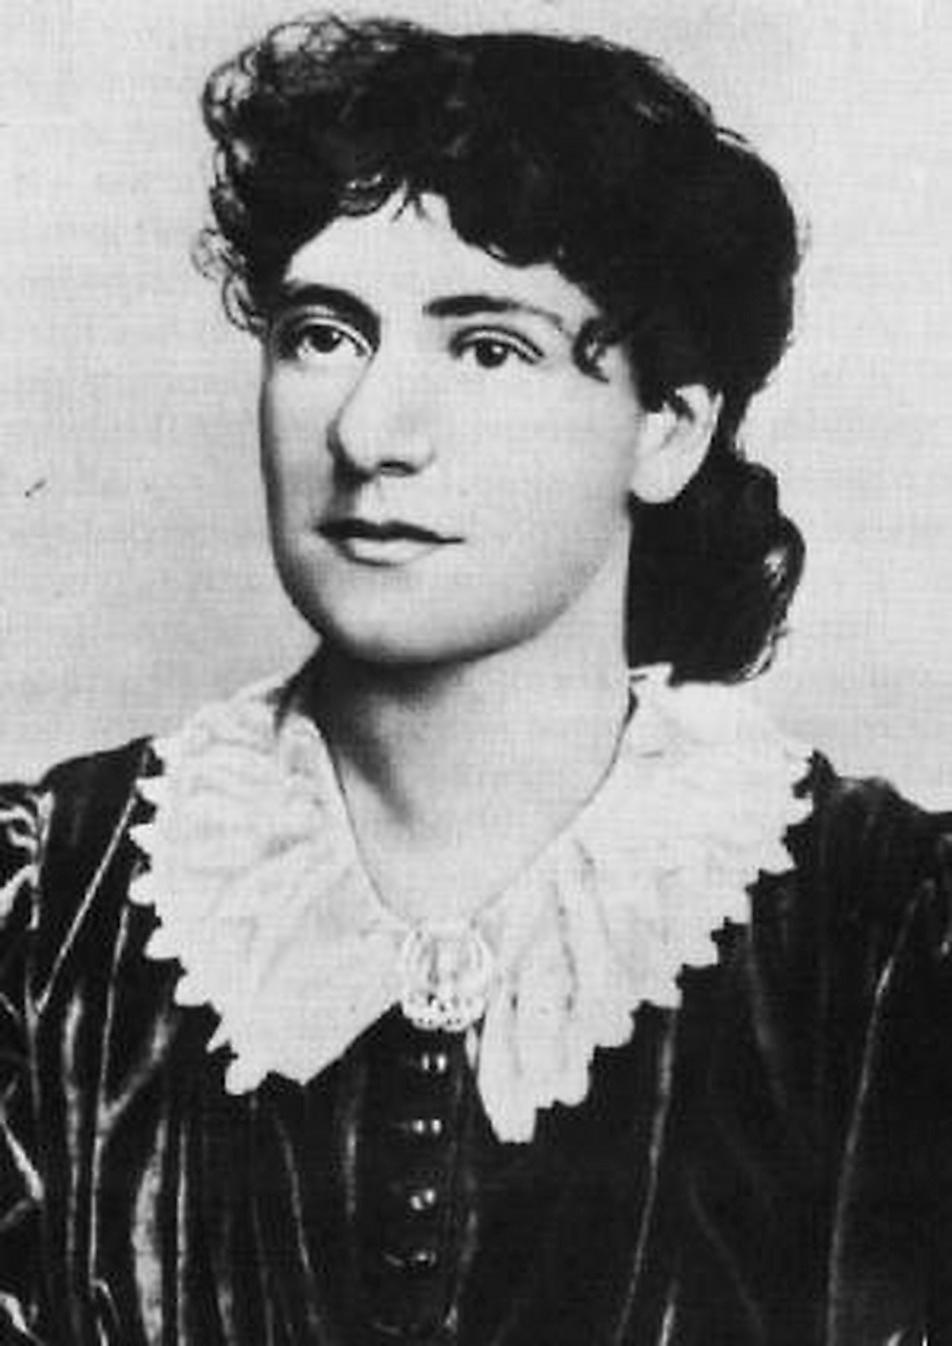 Eleanor Marx Aveling föddes den 16 januari 1855. Hon var bland mycket annat facklig ledare, skådespelare och översättare. Hon dog 31 mars 1898, endast 43 år gammal.